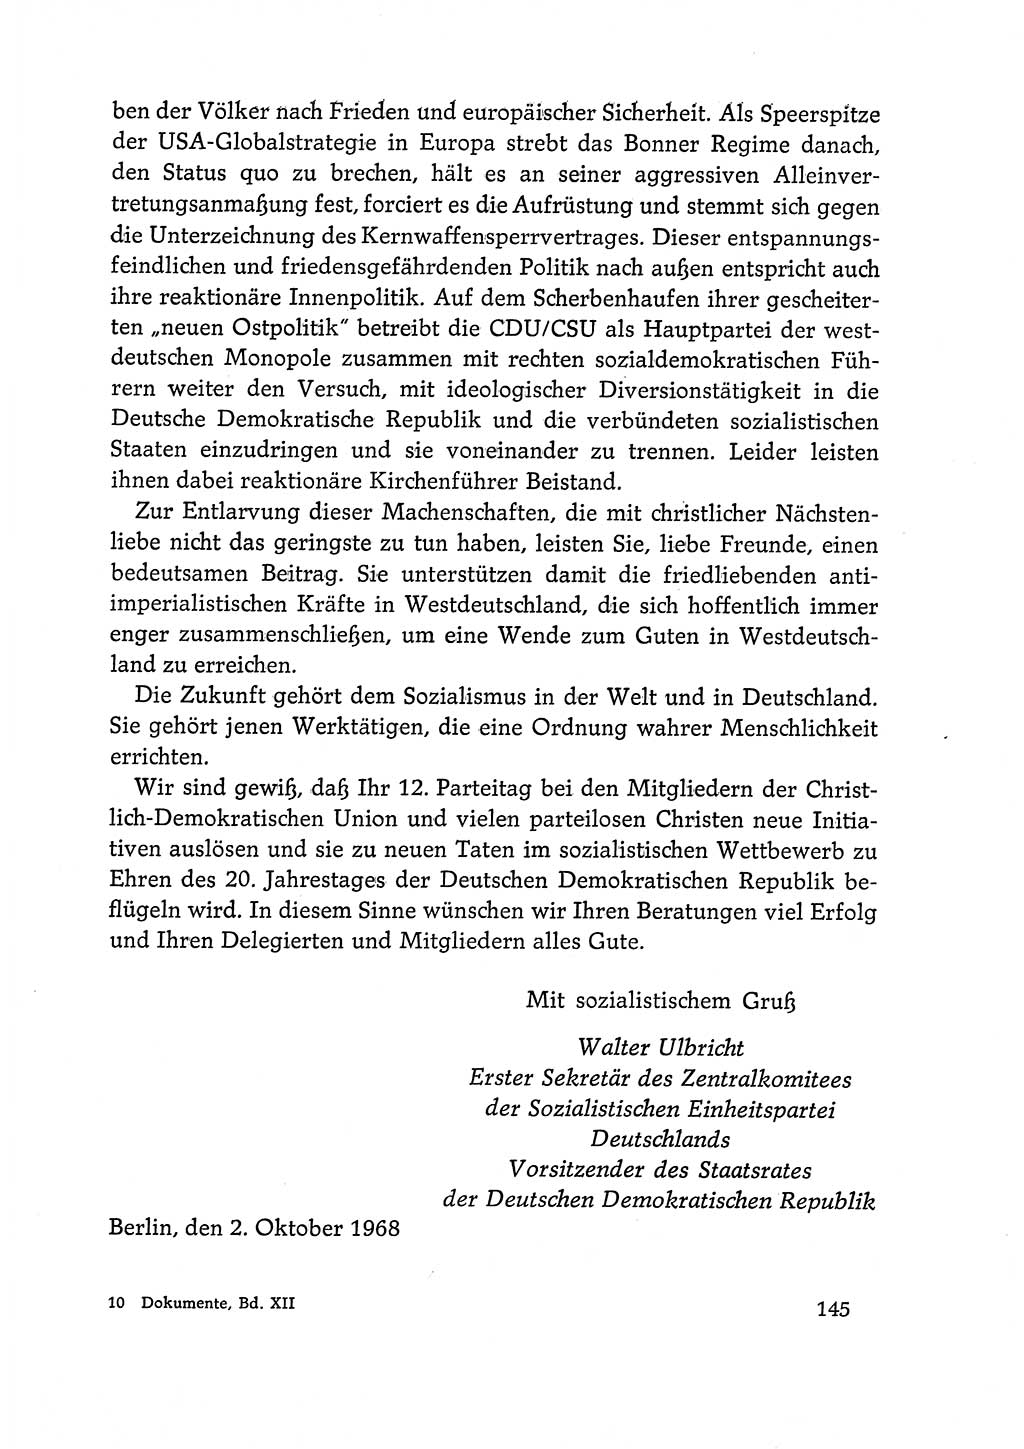 Dokumente der Sozialistischen Einheitspartei Deutschlands (SED) [Deutsche Demokratische Republik (DDR)] 1968-1969, Seite 145 (Dok. SED DDR 1968-1969, S. 145)